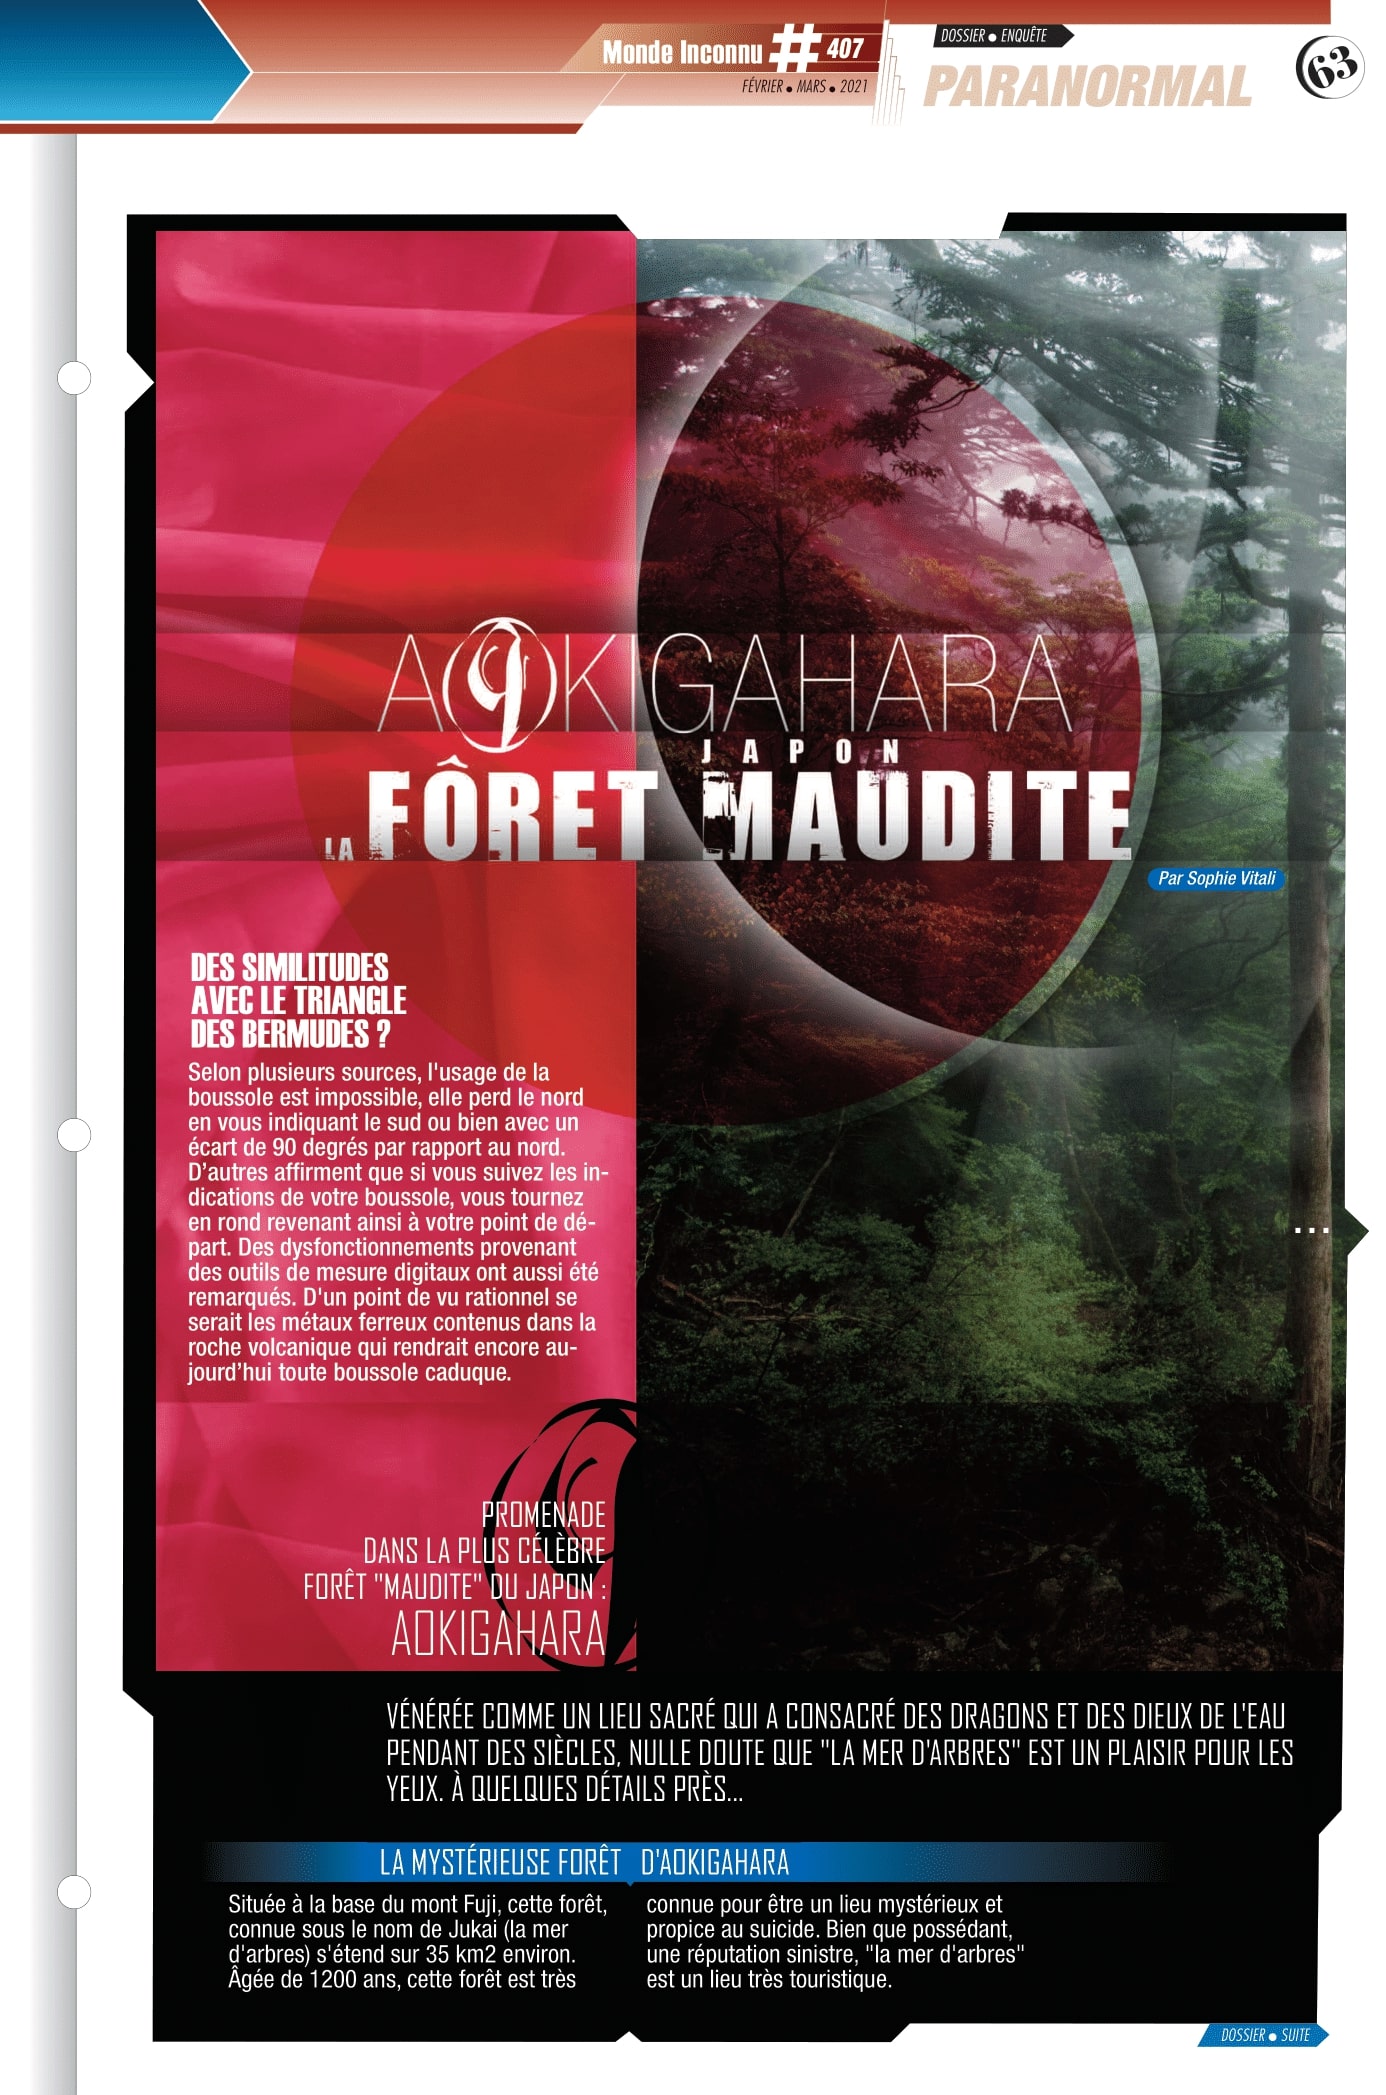 La forêt maudite d'Aokigahara par Sophie Vitali pour le magazine Monde Inconnu